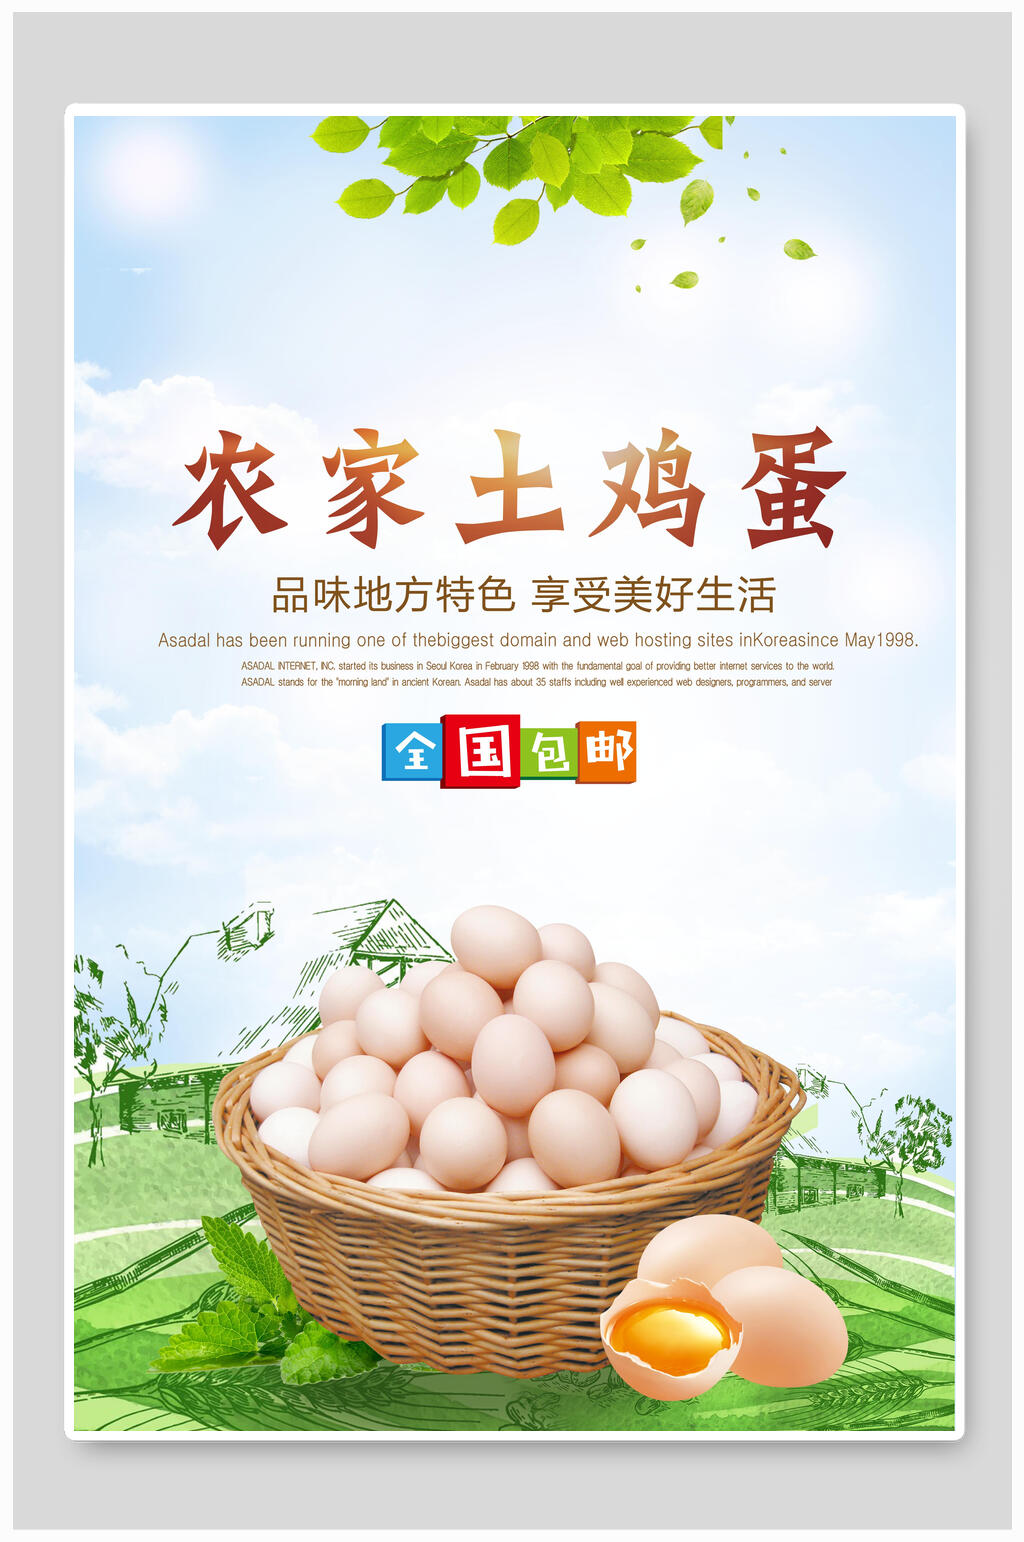 的扁平风农家土鸡蛋食材促销海报素材下载,本次作品主题是平面广告